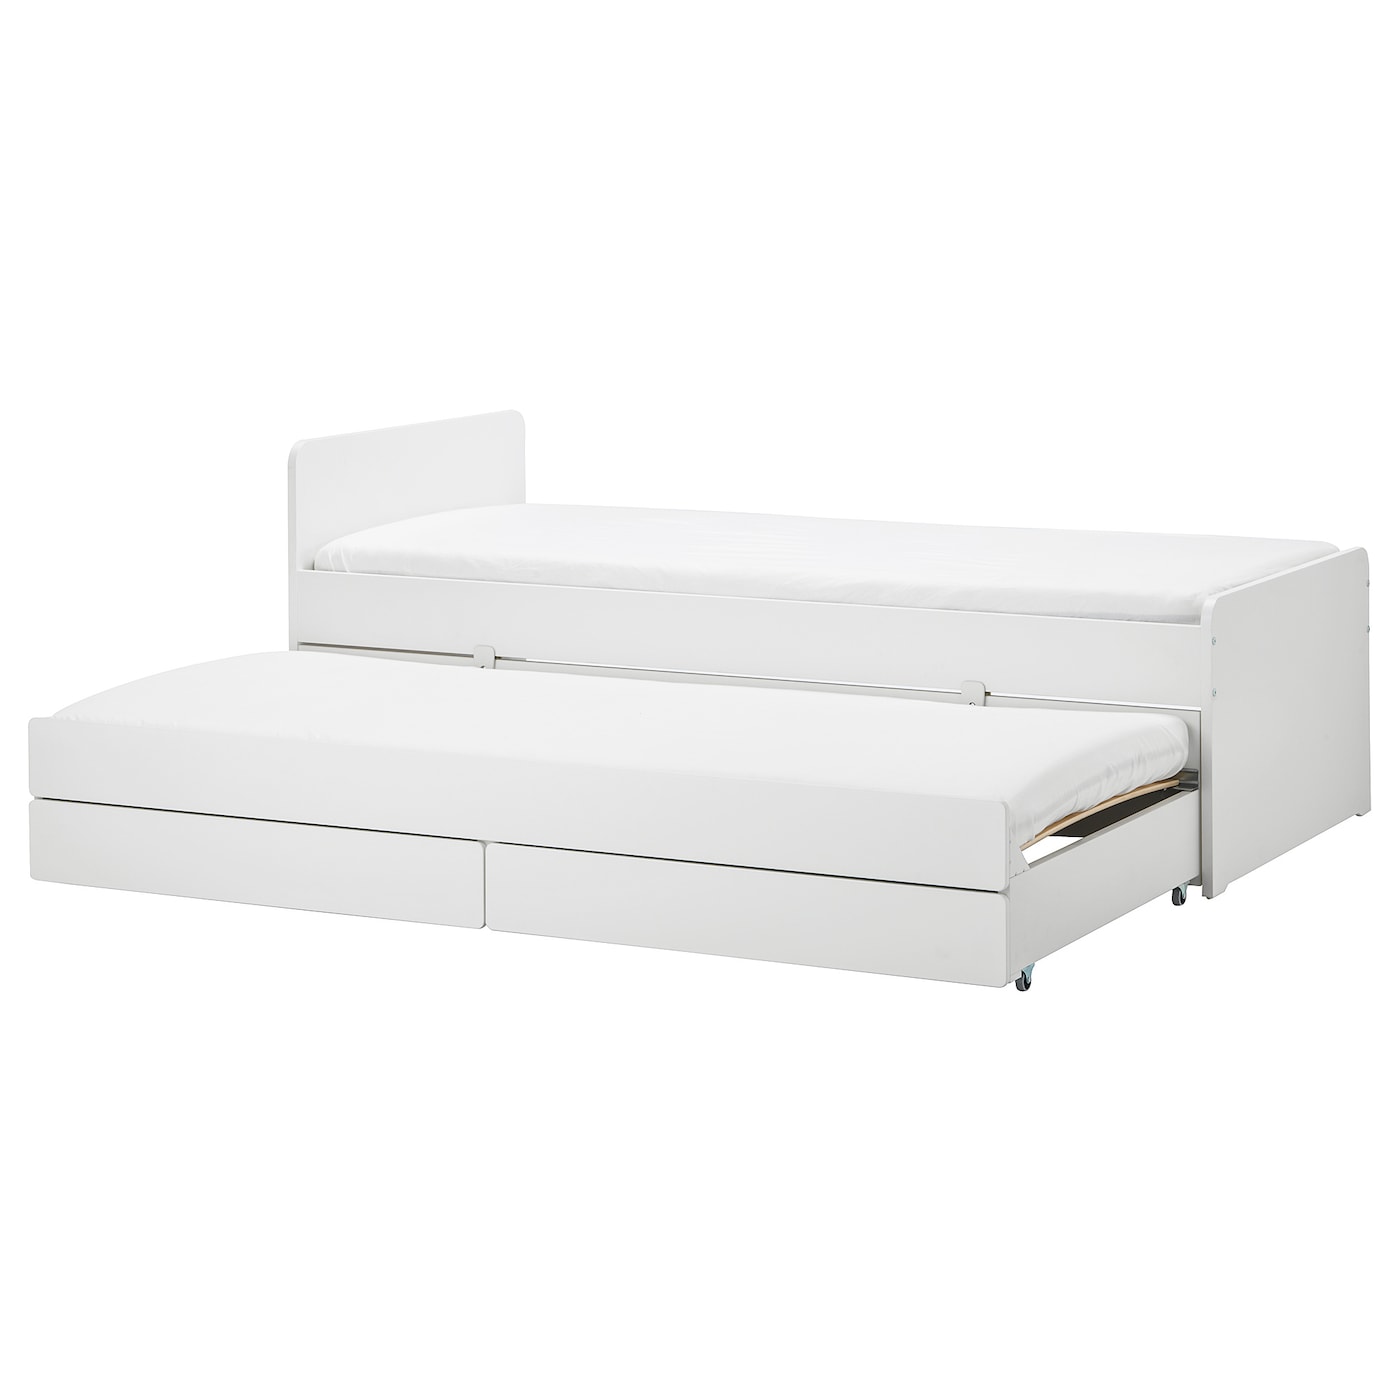 Каркас кровати с нижним спальным местом - IKEA SLÄKT/LURÖY/SLAKT/LUROY, 200х90 см, белый, СЛЭКТ/ЛУРОЙ ИКЕА